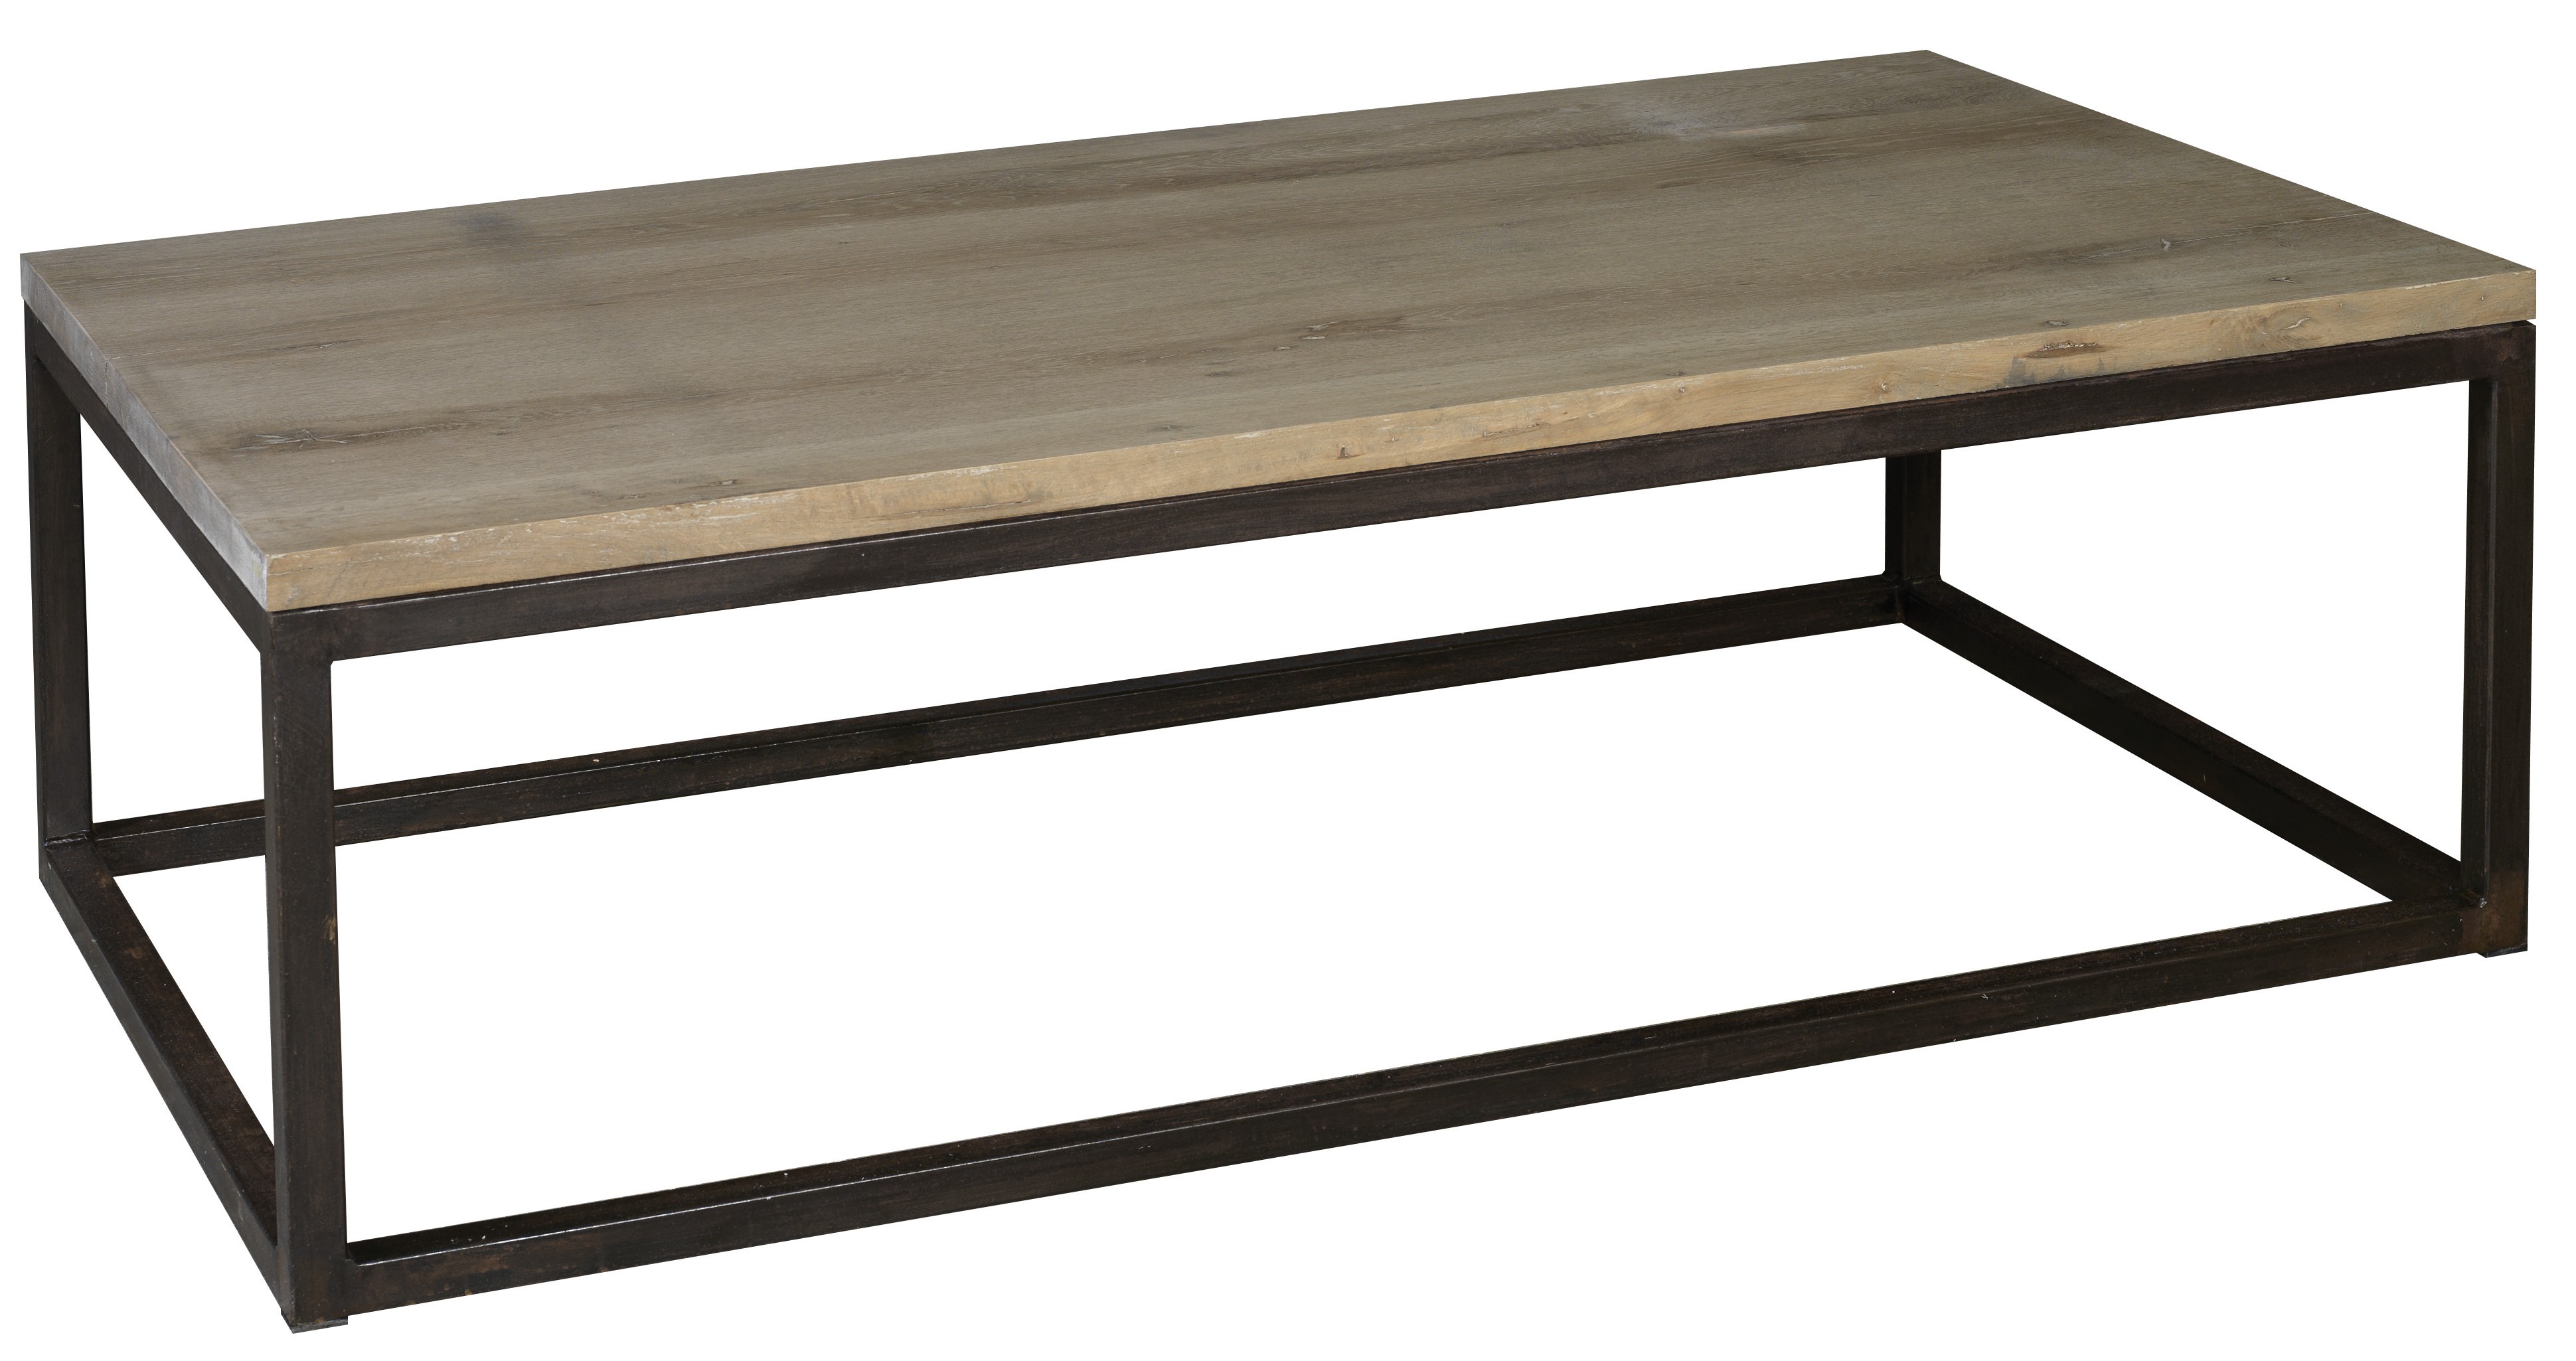 Table basse rectangulaire bois et métal